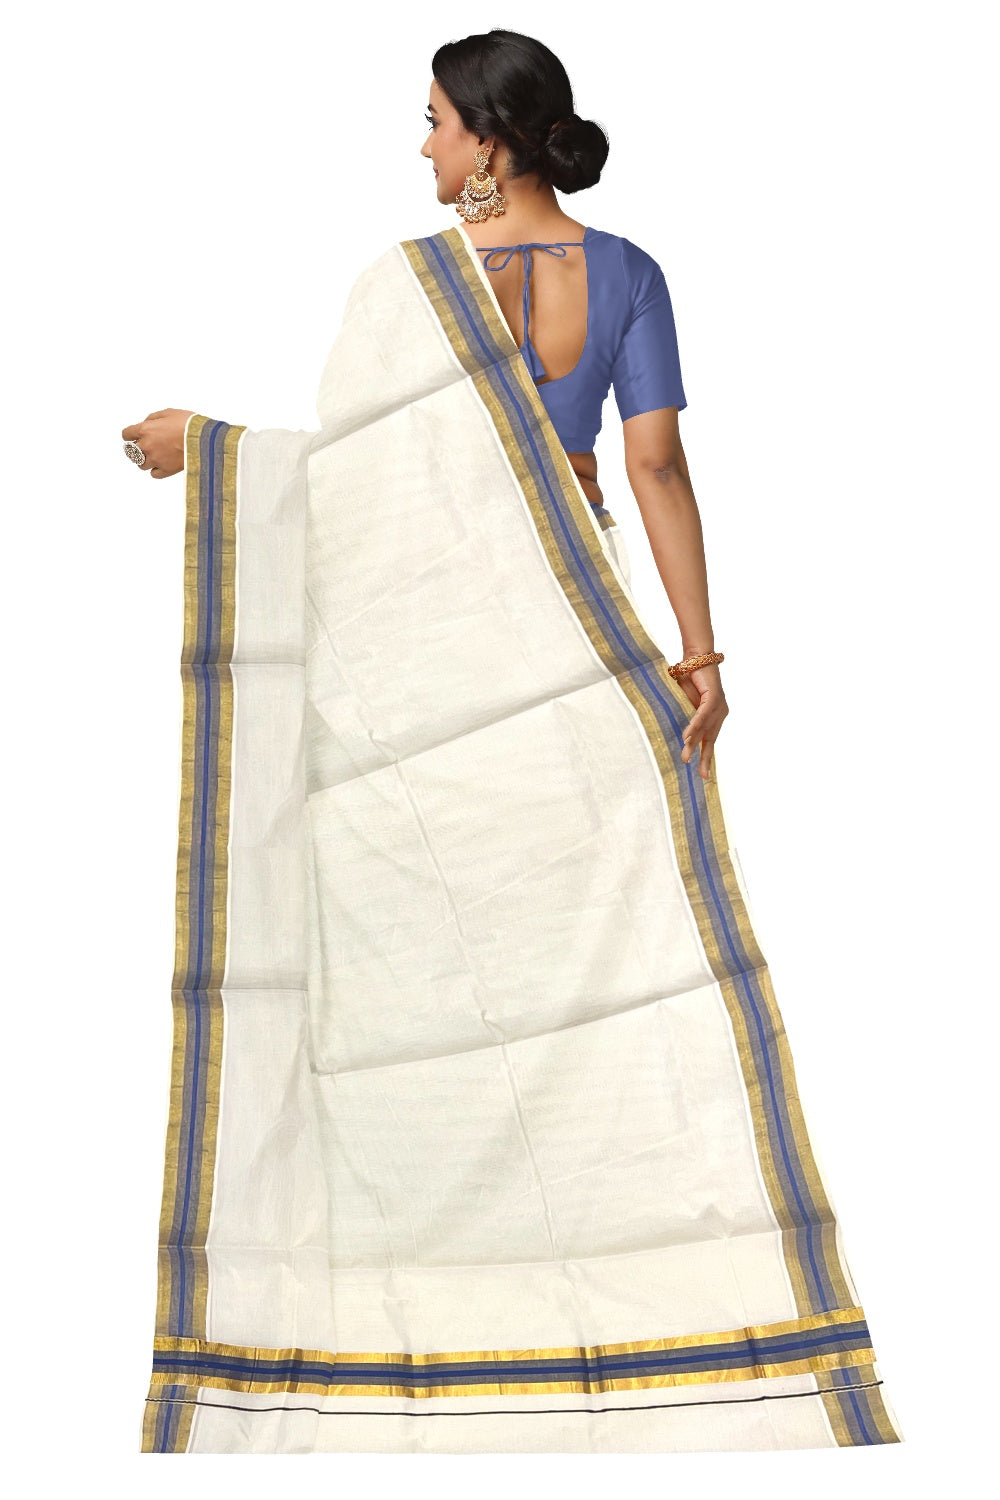 Pure Cotton Kerala Saree with Kasavu and Blue Border